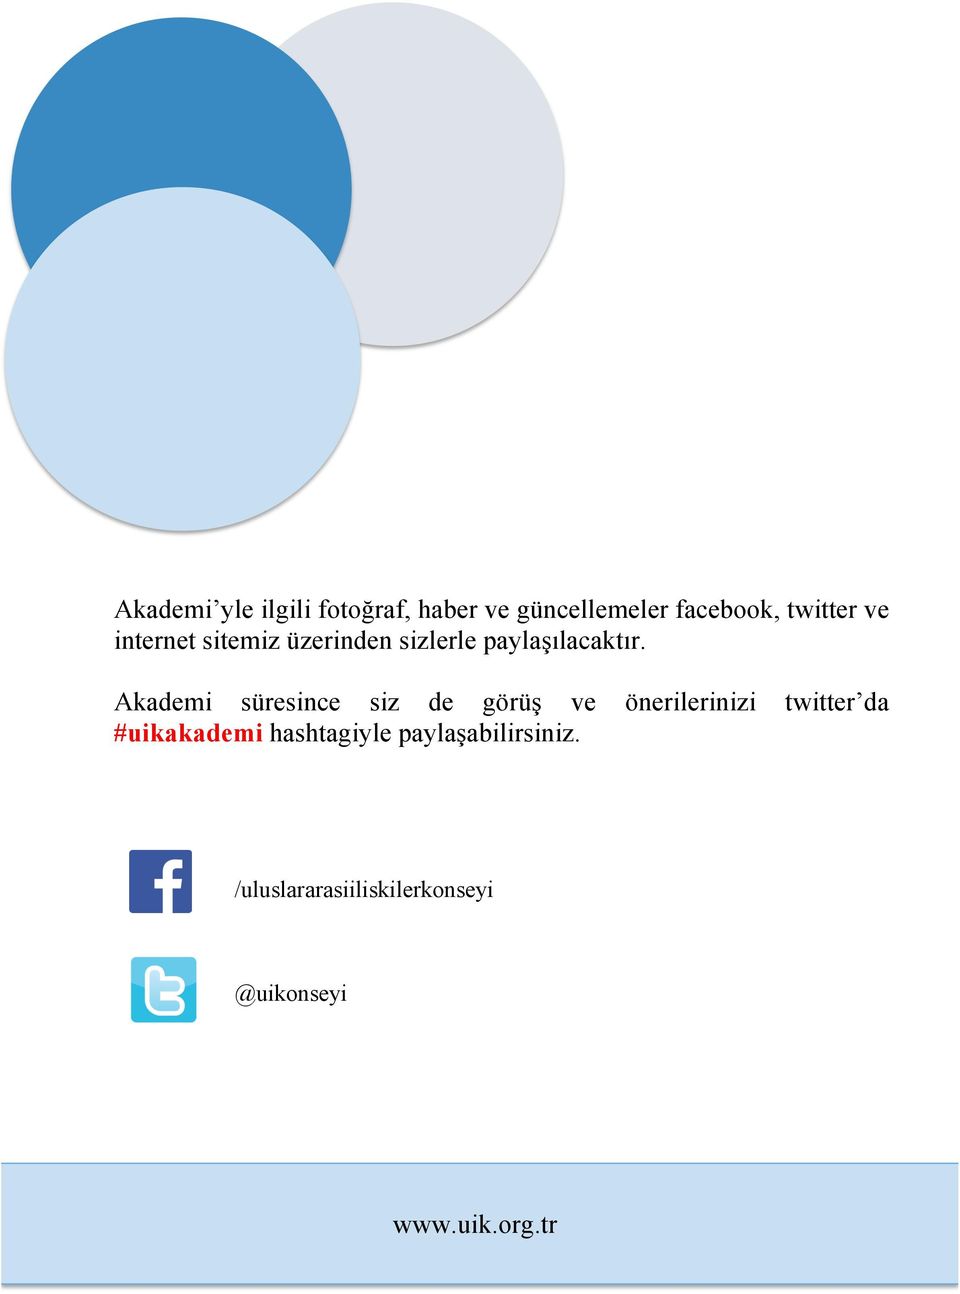 Akademi süresince siz de görüş ve önerilerinizi twitter da #uikakademi